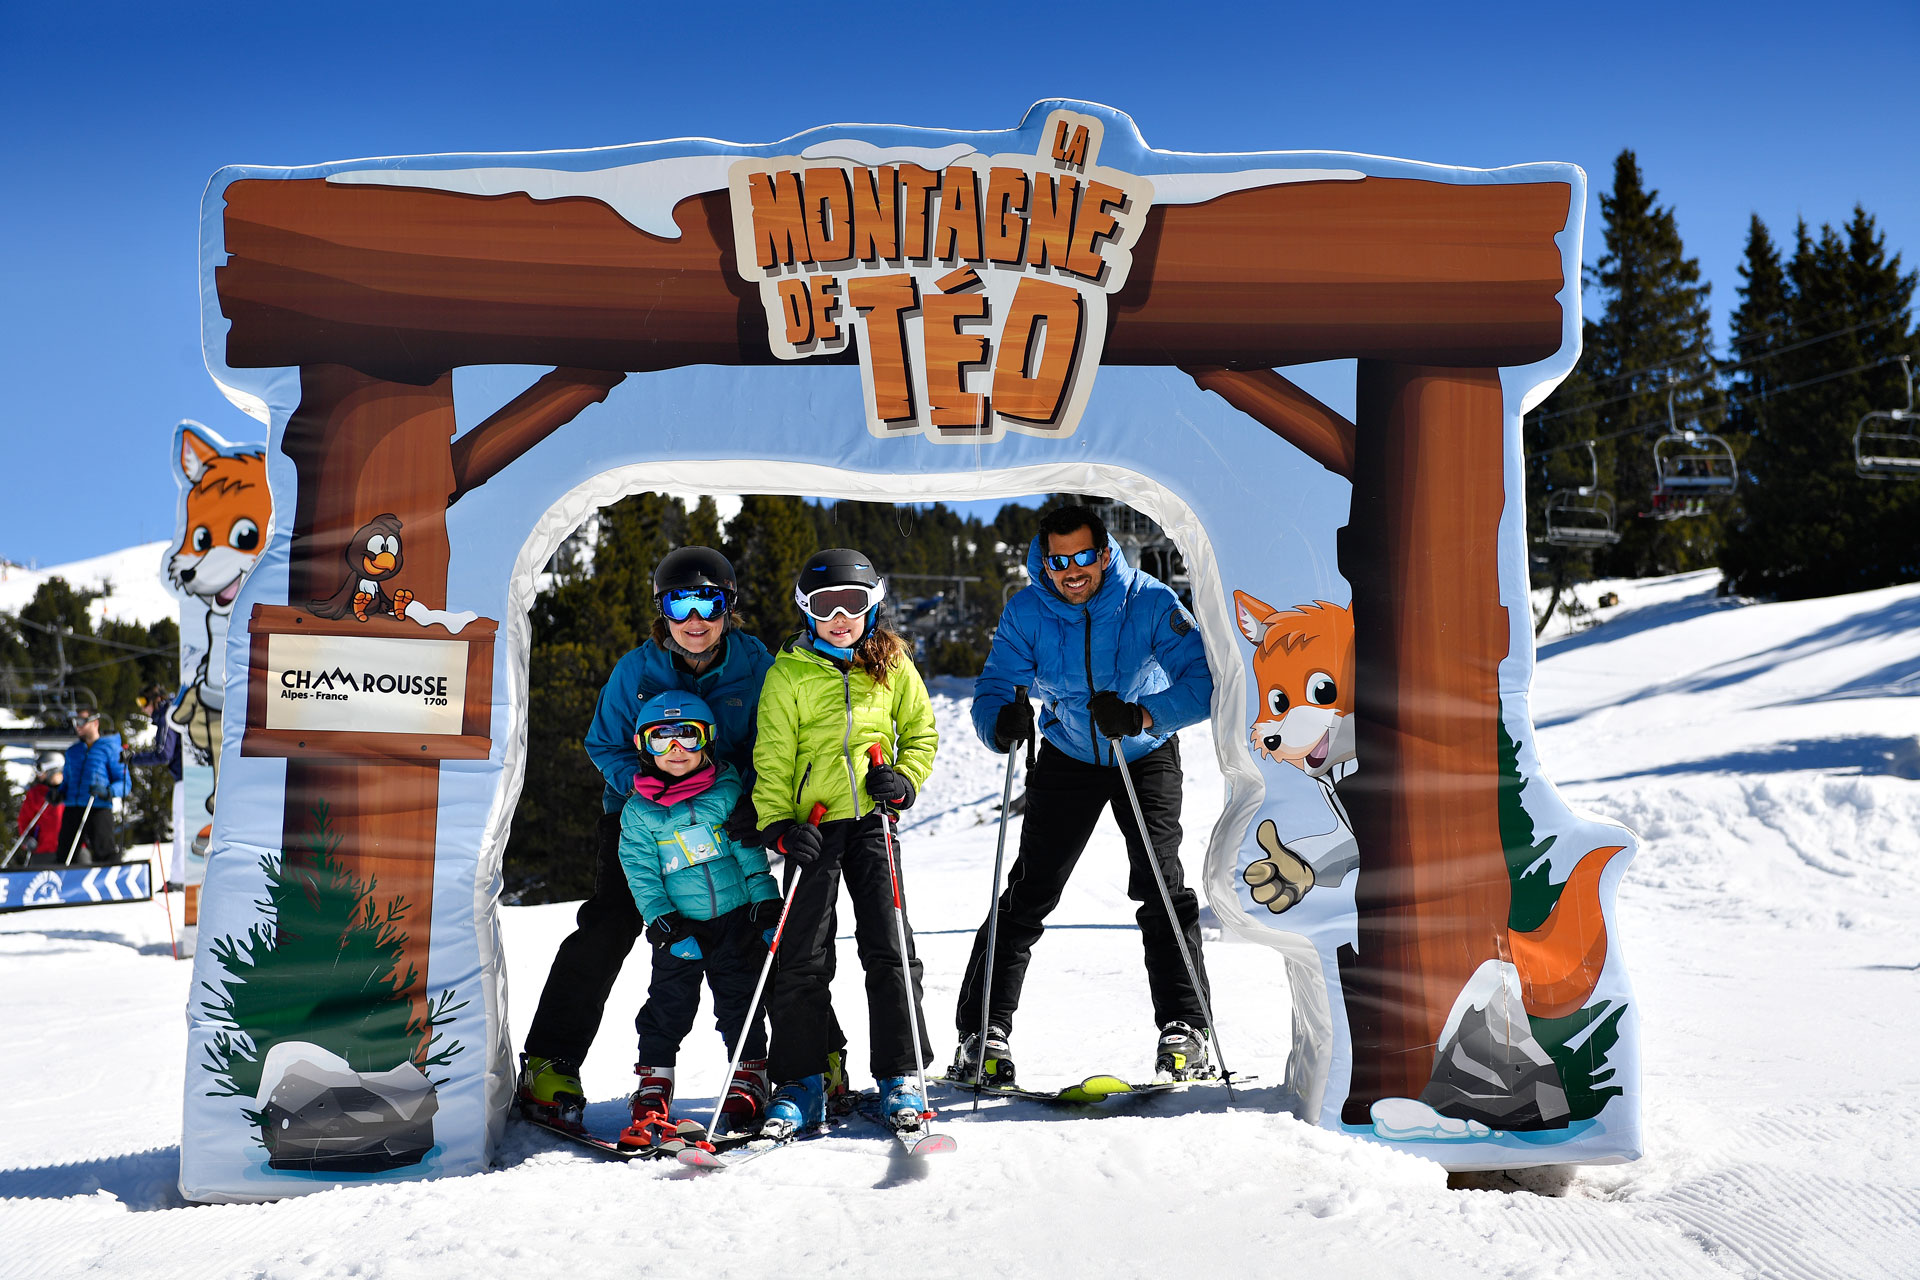 Chamrousse montagne teo zone ski famille station montagne grenoble isère alpes france - © Fred Guerdin - Chamrousse